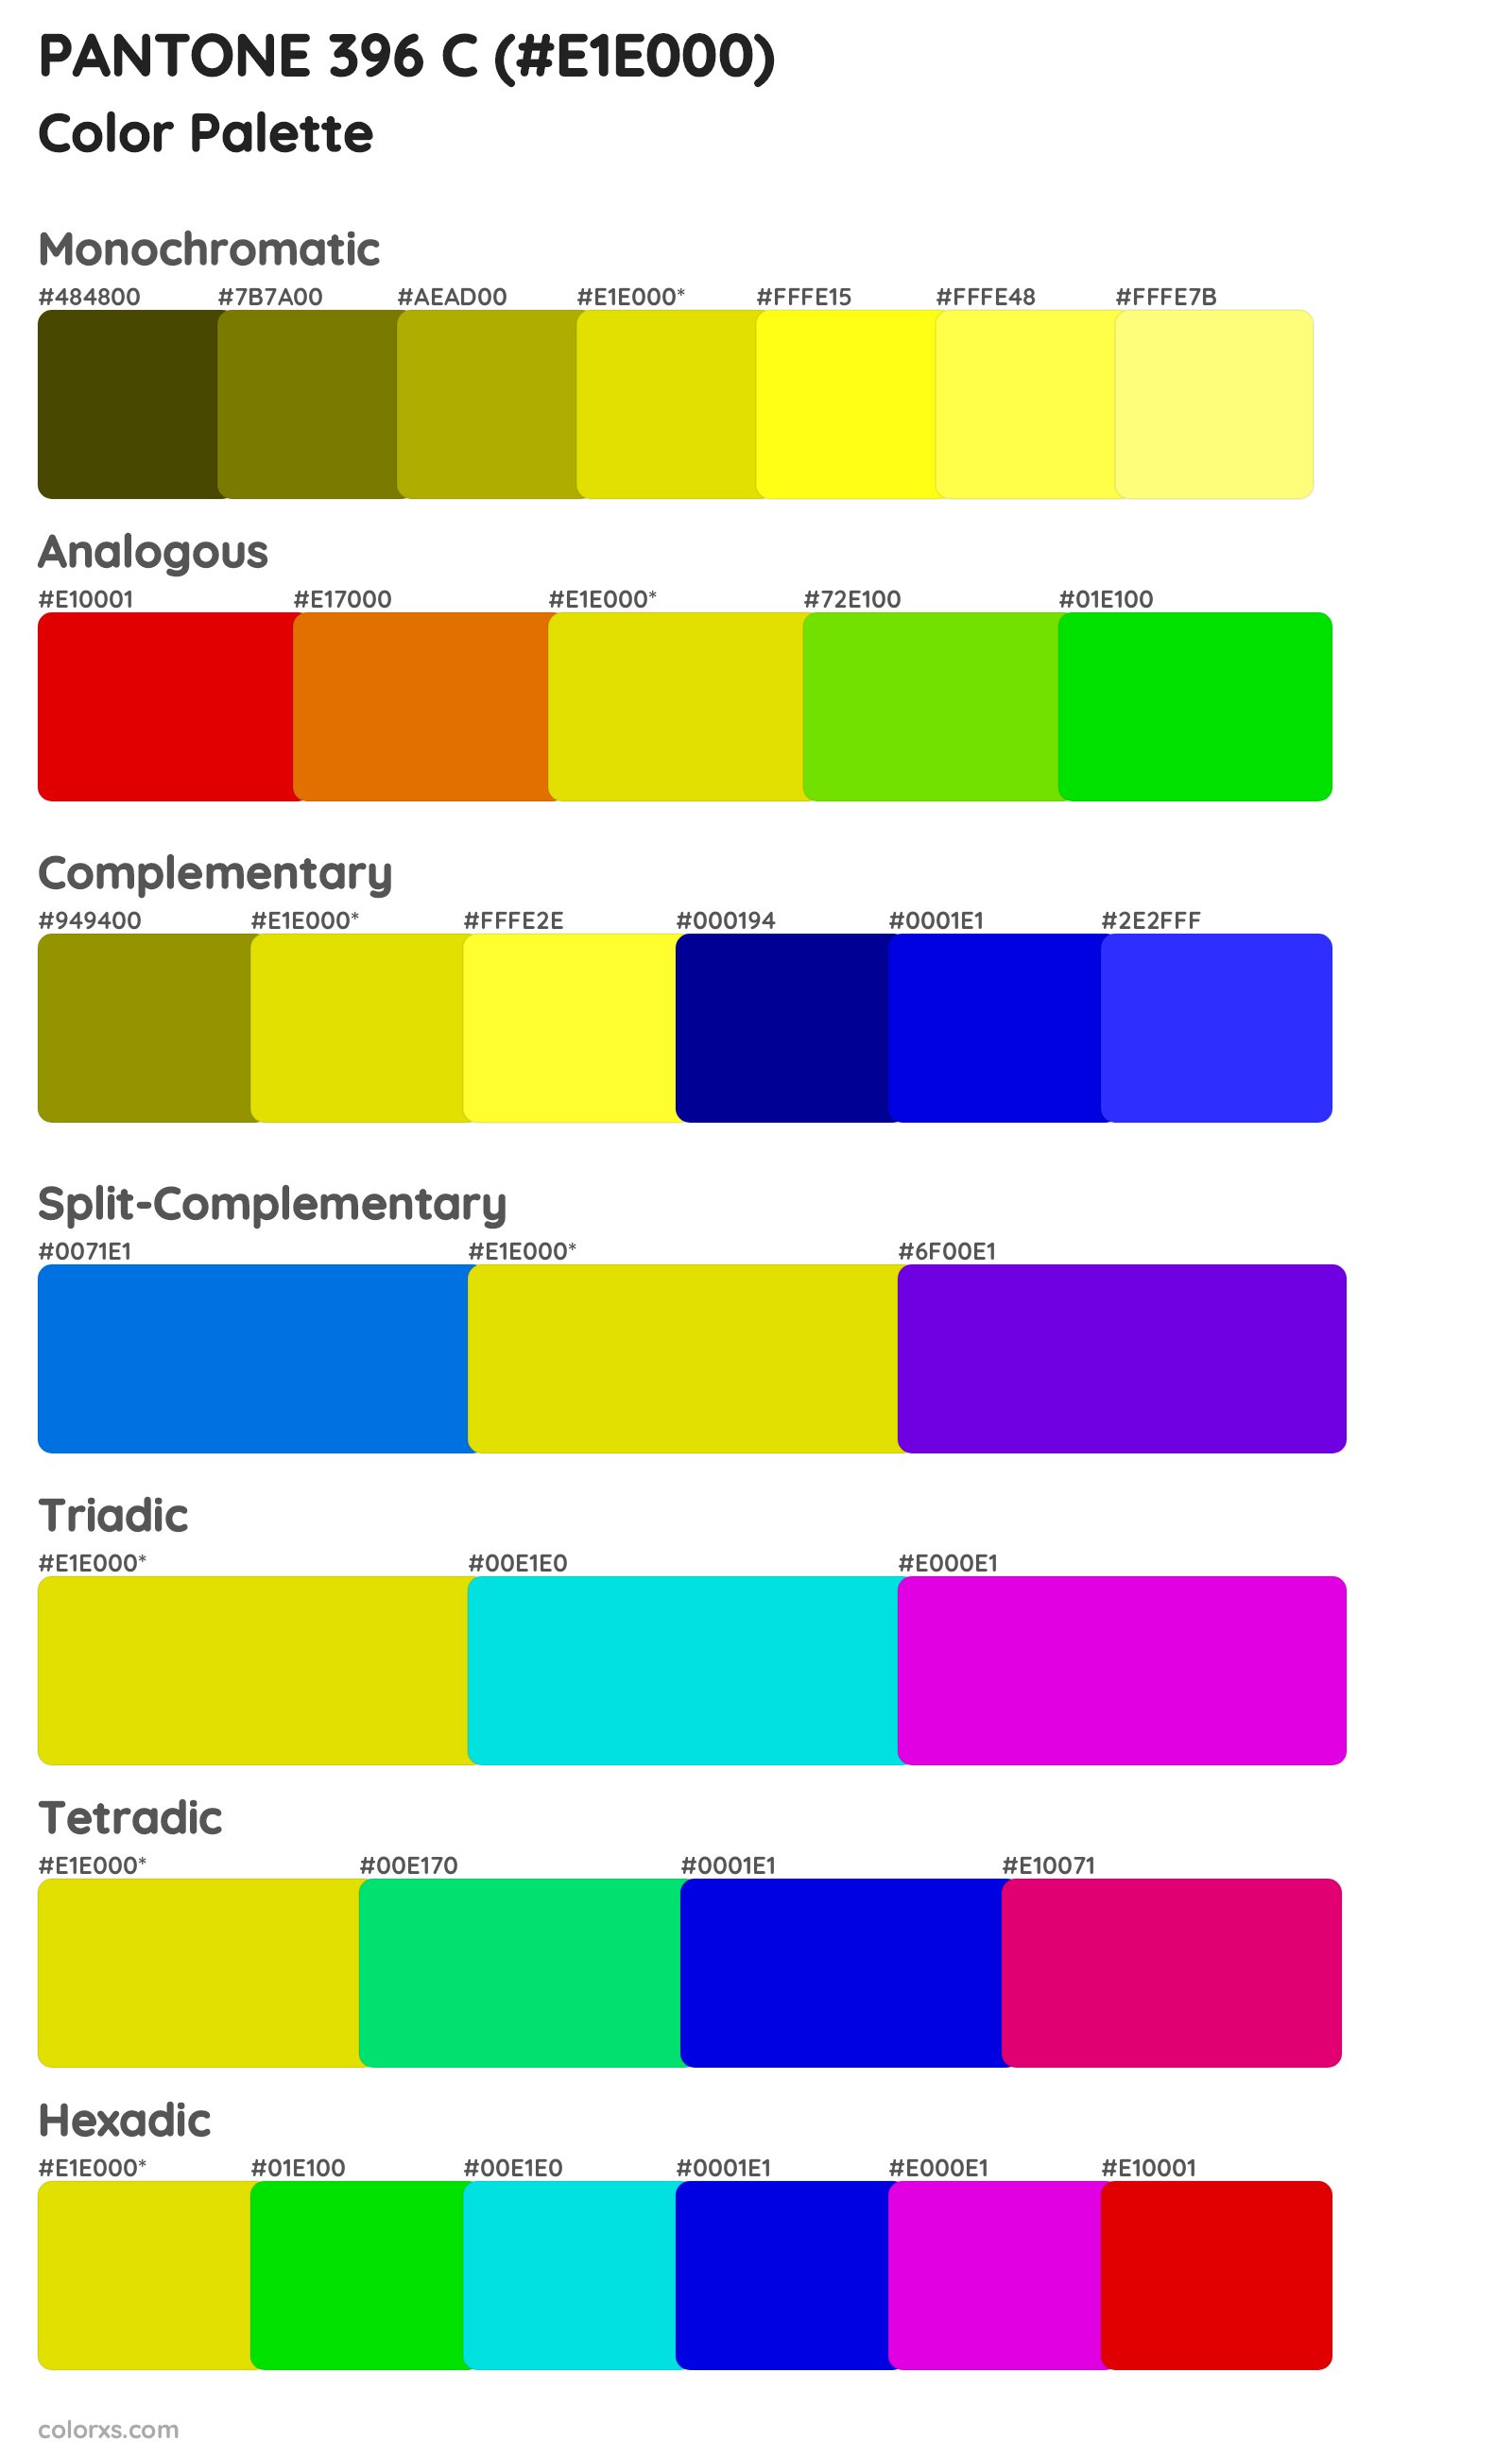 PANTONE 396 C Color Scheme Palettes